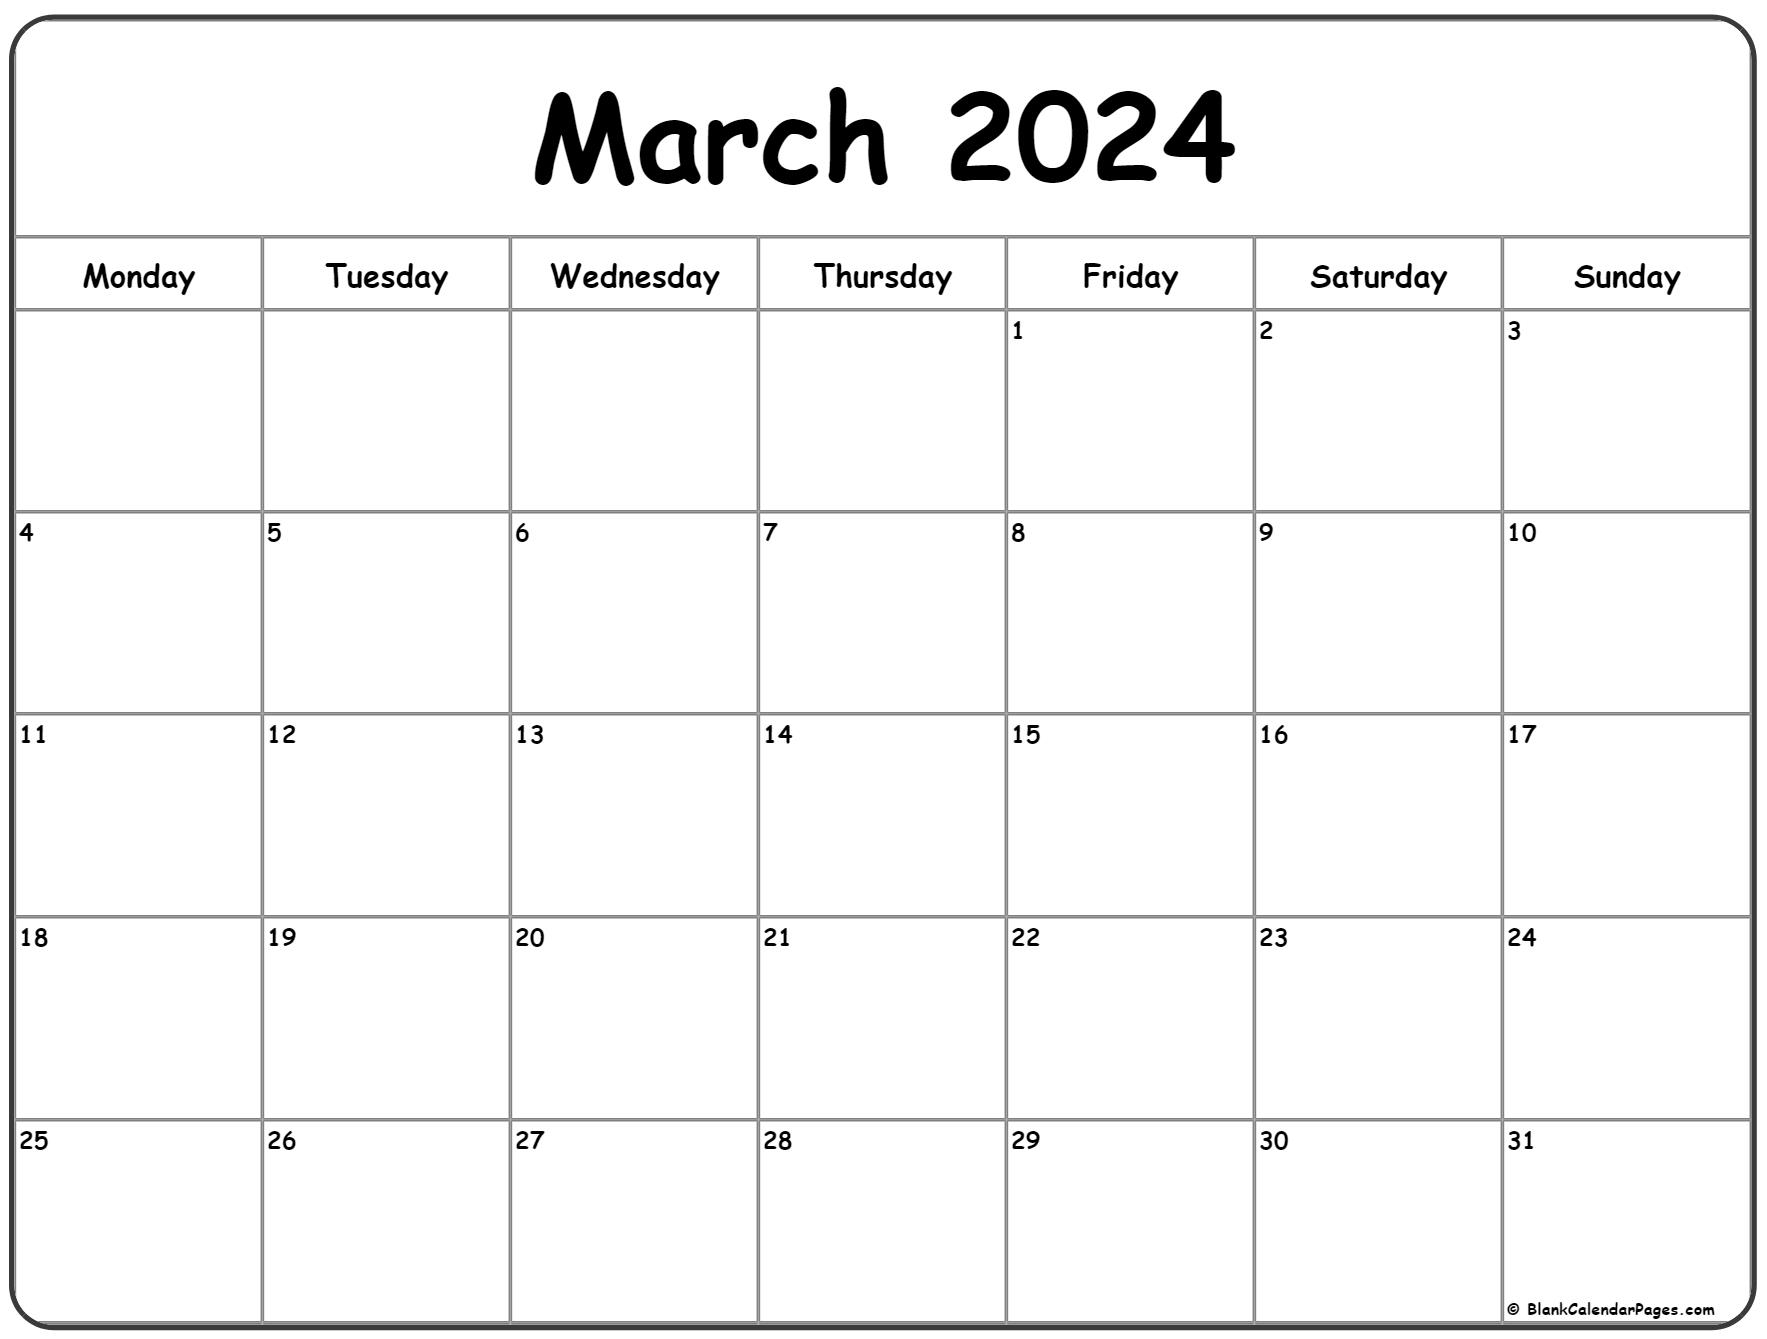 March 2024 Monday Calendar | Monday To Sunday for A-Printable-Calendar March 2024